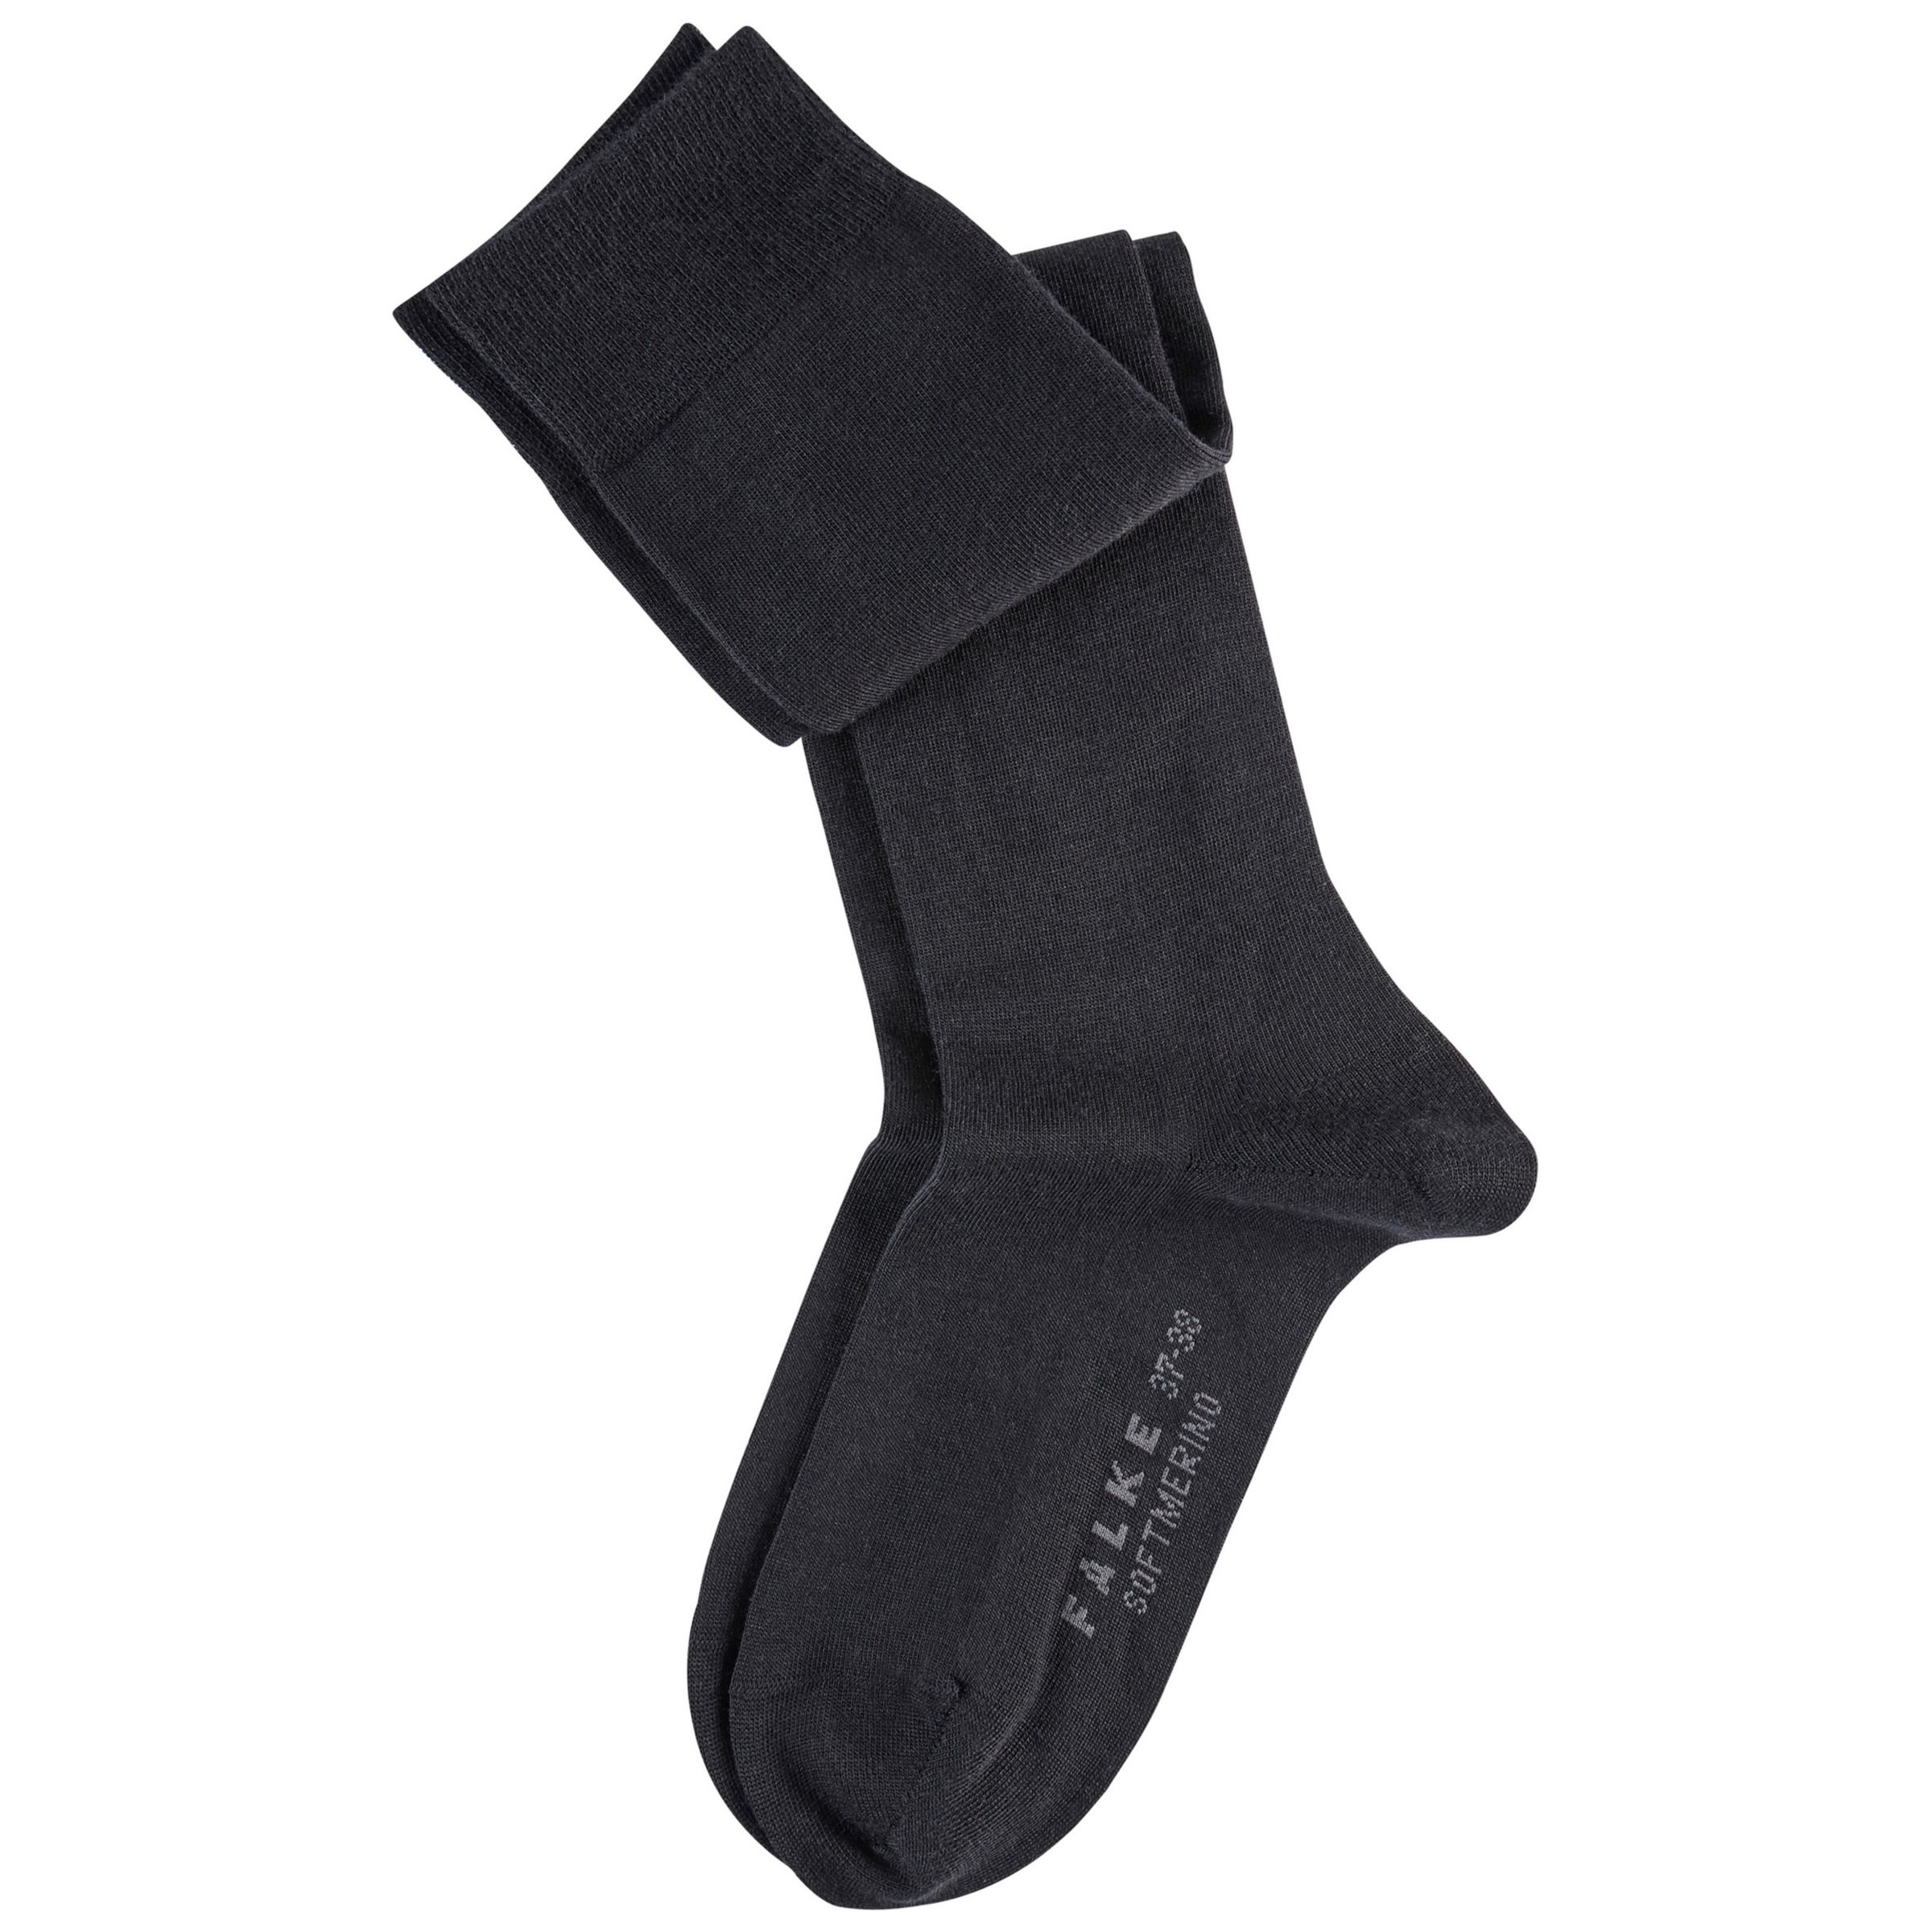 FALKE Soft Merino Blend Knee High Socks, Black at John Lewis & Partners